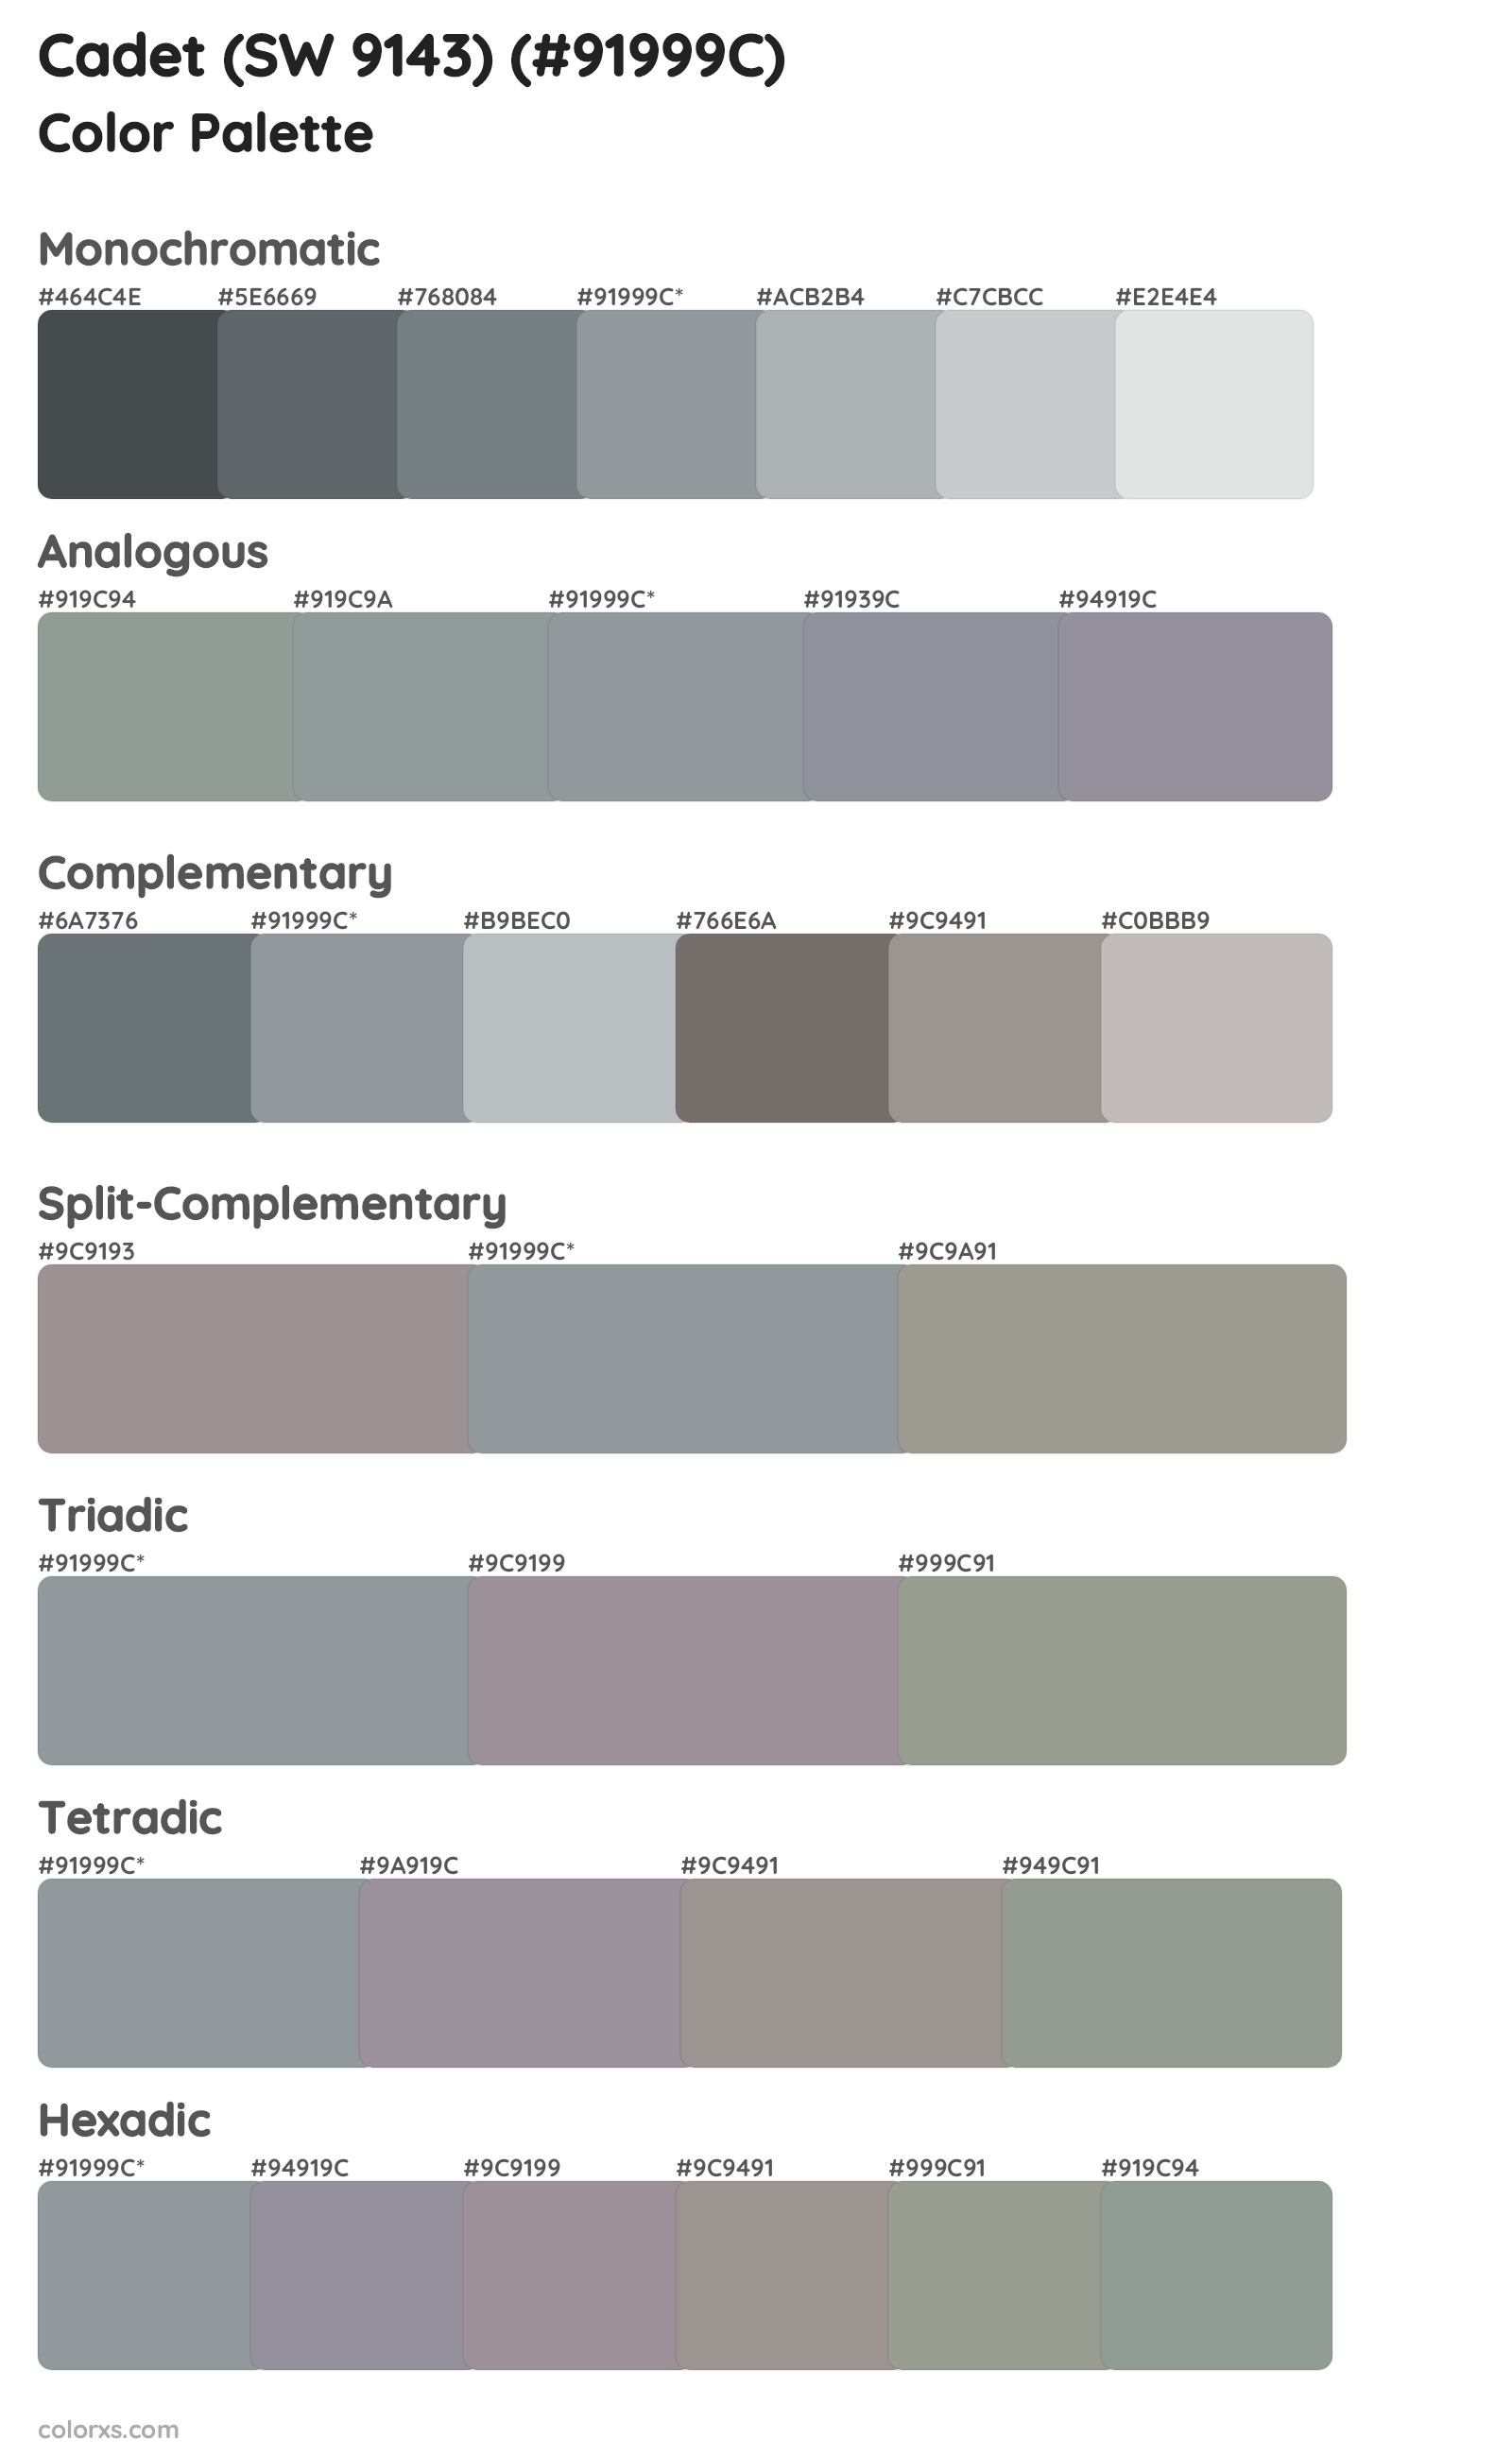 Cadet (SW 9143) Color Scheme Palettes